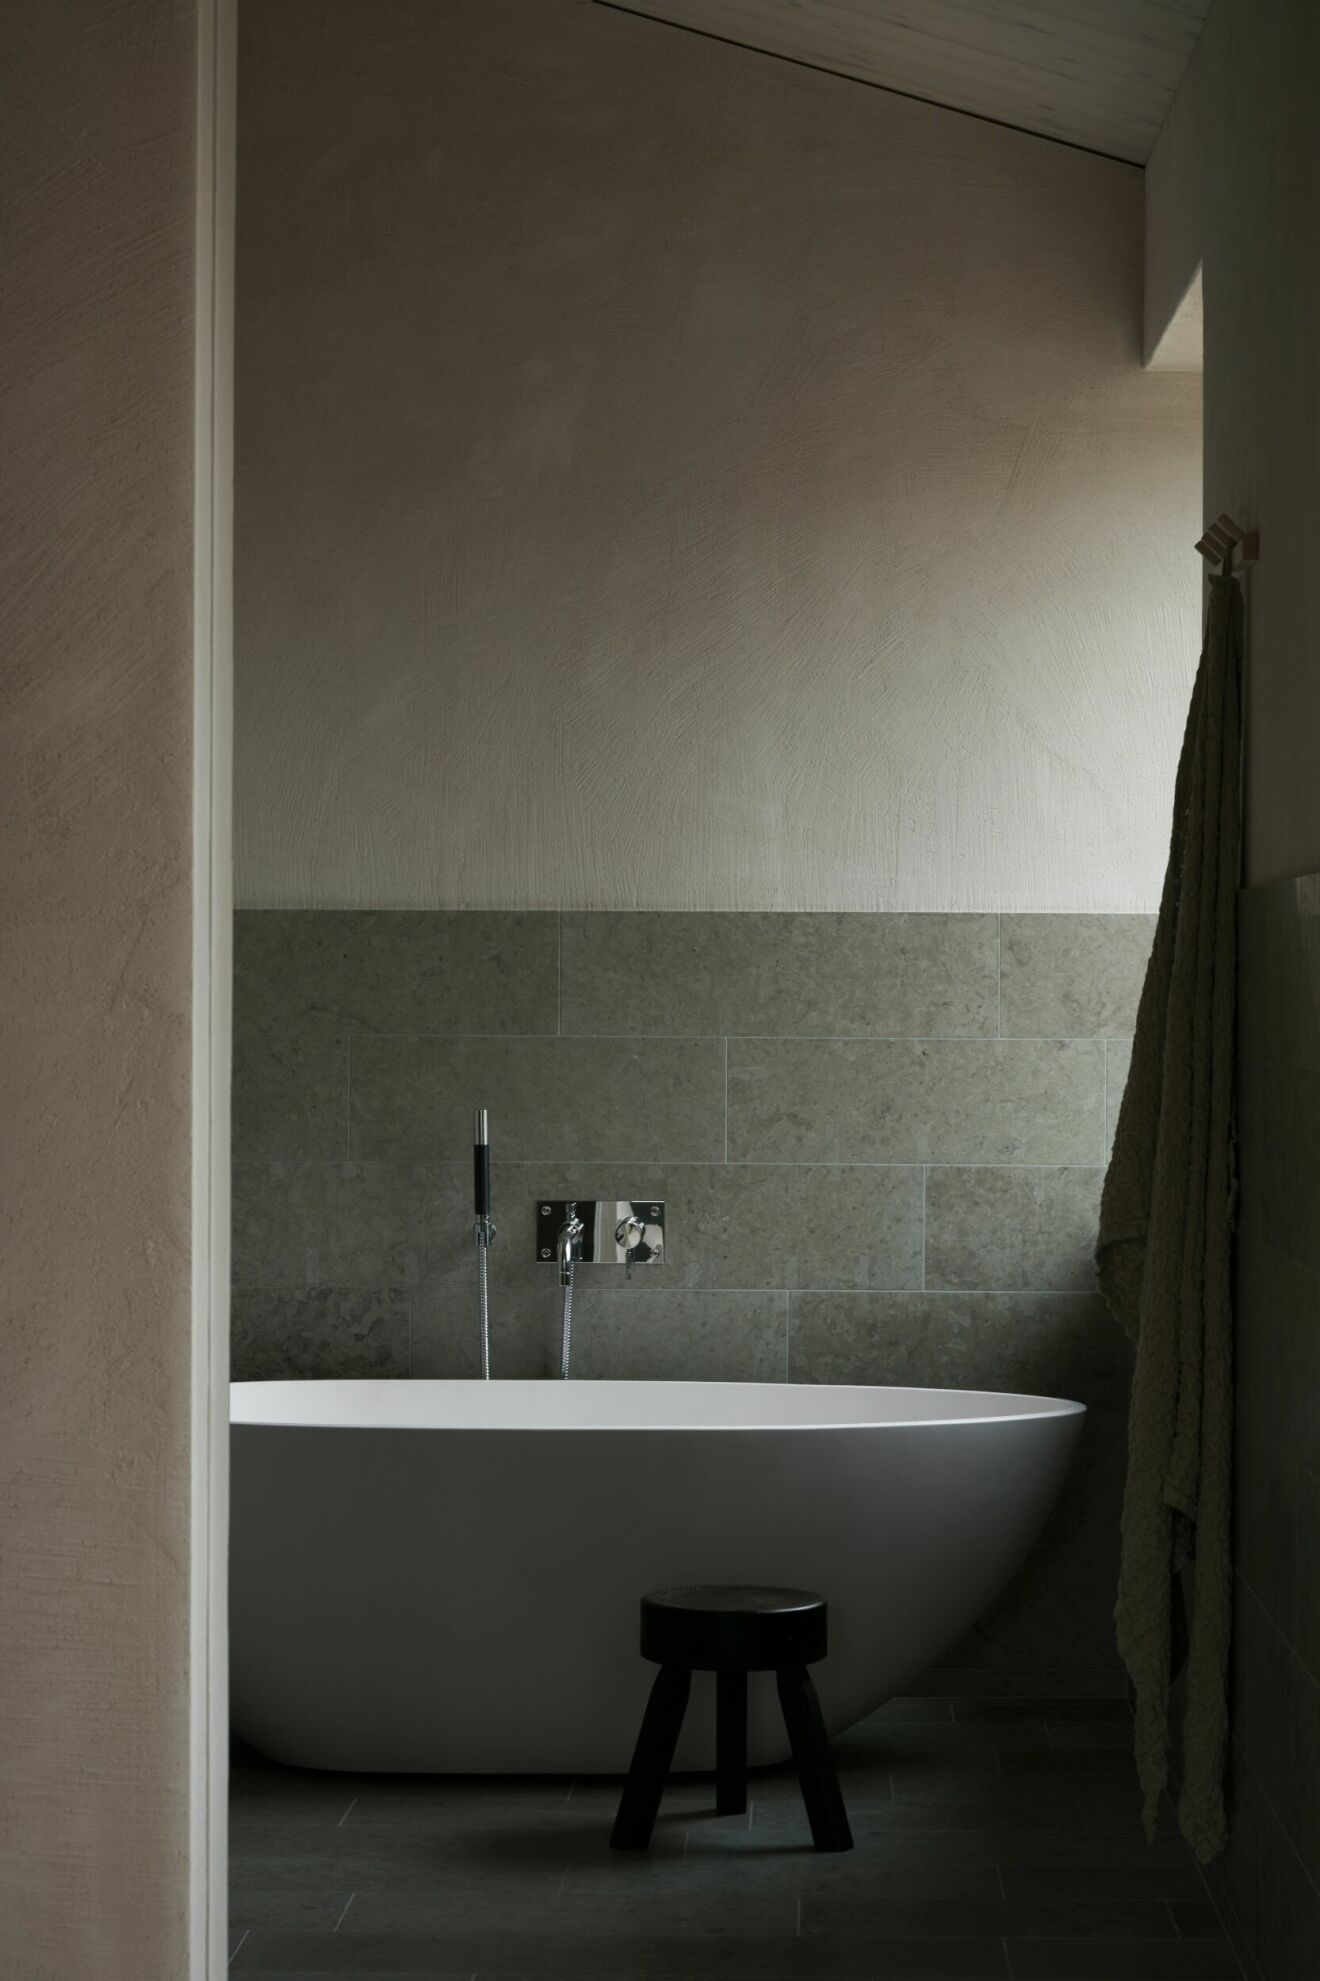 Även badrummen är klädda i kalksten som ger en vacker kontrast mot väggarnas puts. Här med badkarsblandare från Tapwell och pallen AML från Frama.